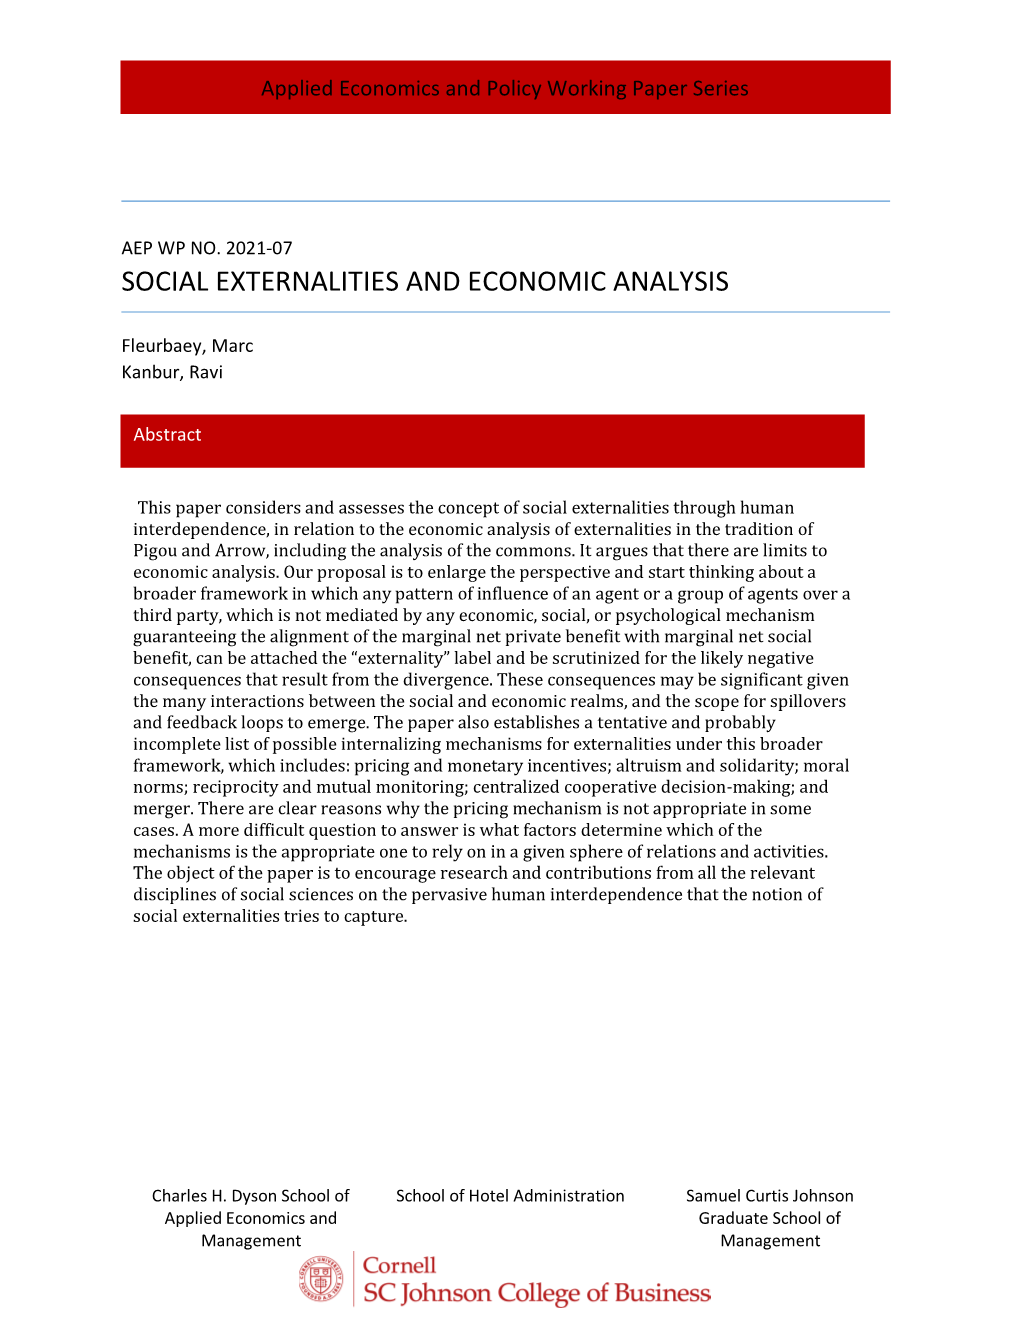 Social Externalities and Economic Analysis